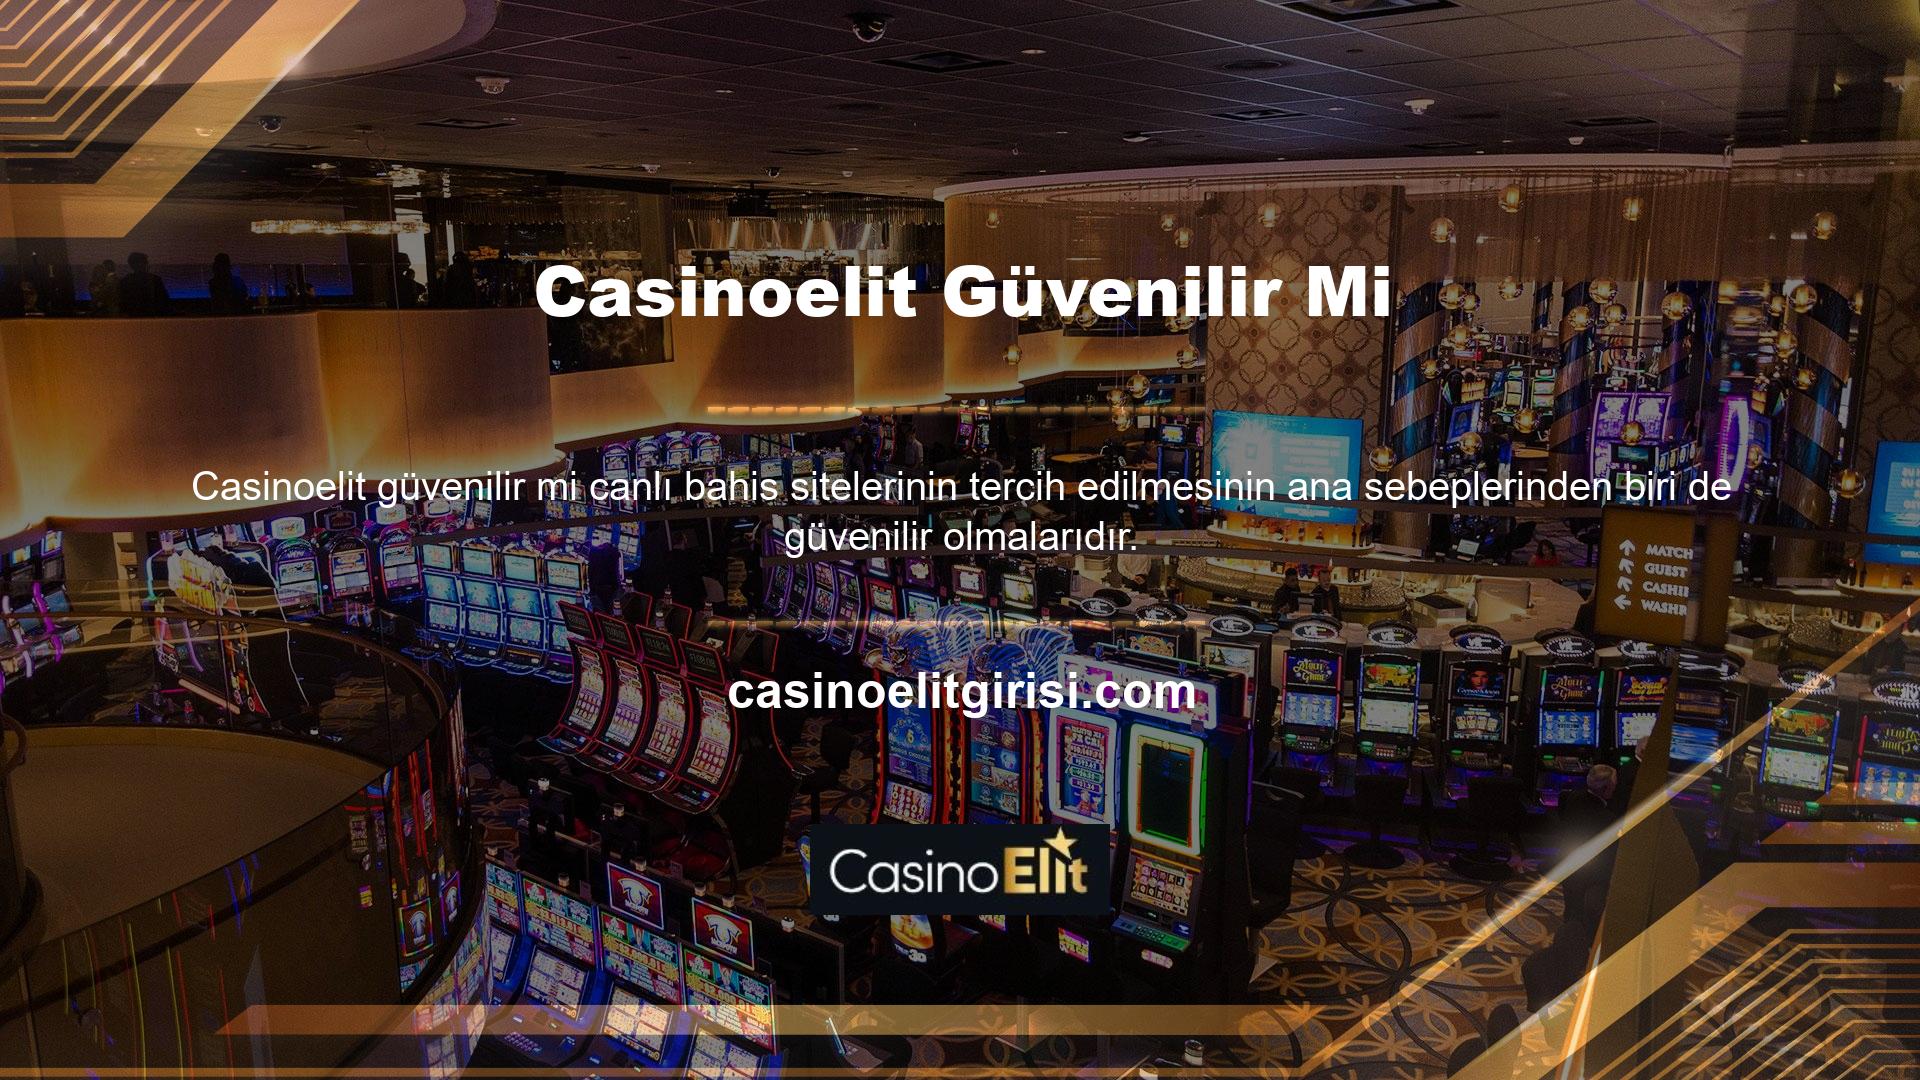 Yazının başında da belirttiğimiz gibi Casinoelit ülkemizde ve dünyada en popüler sitelerden biridir